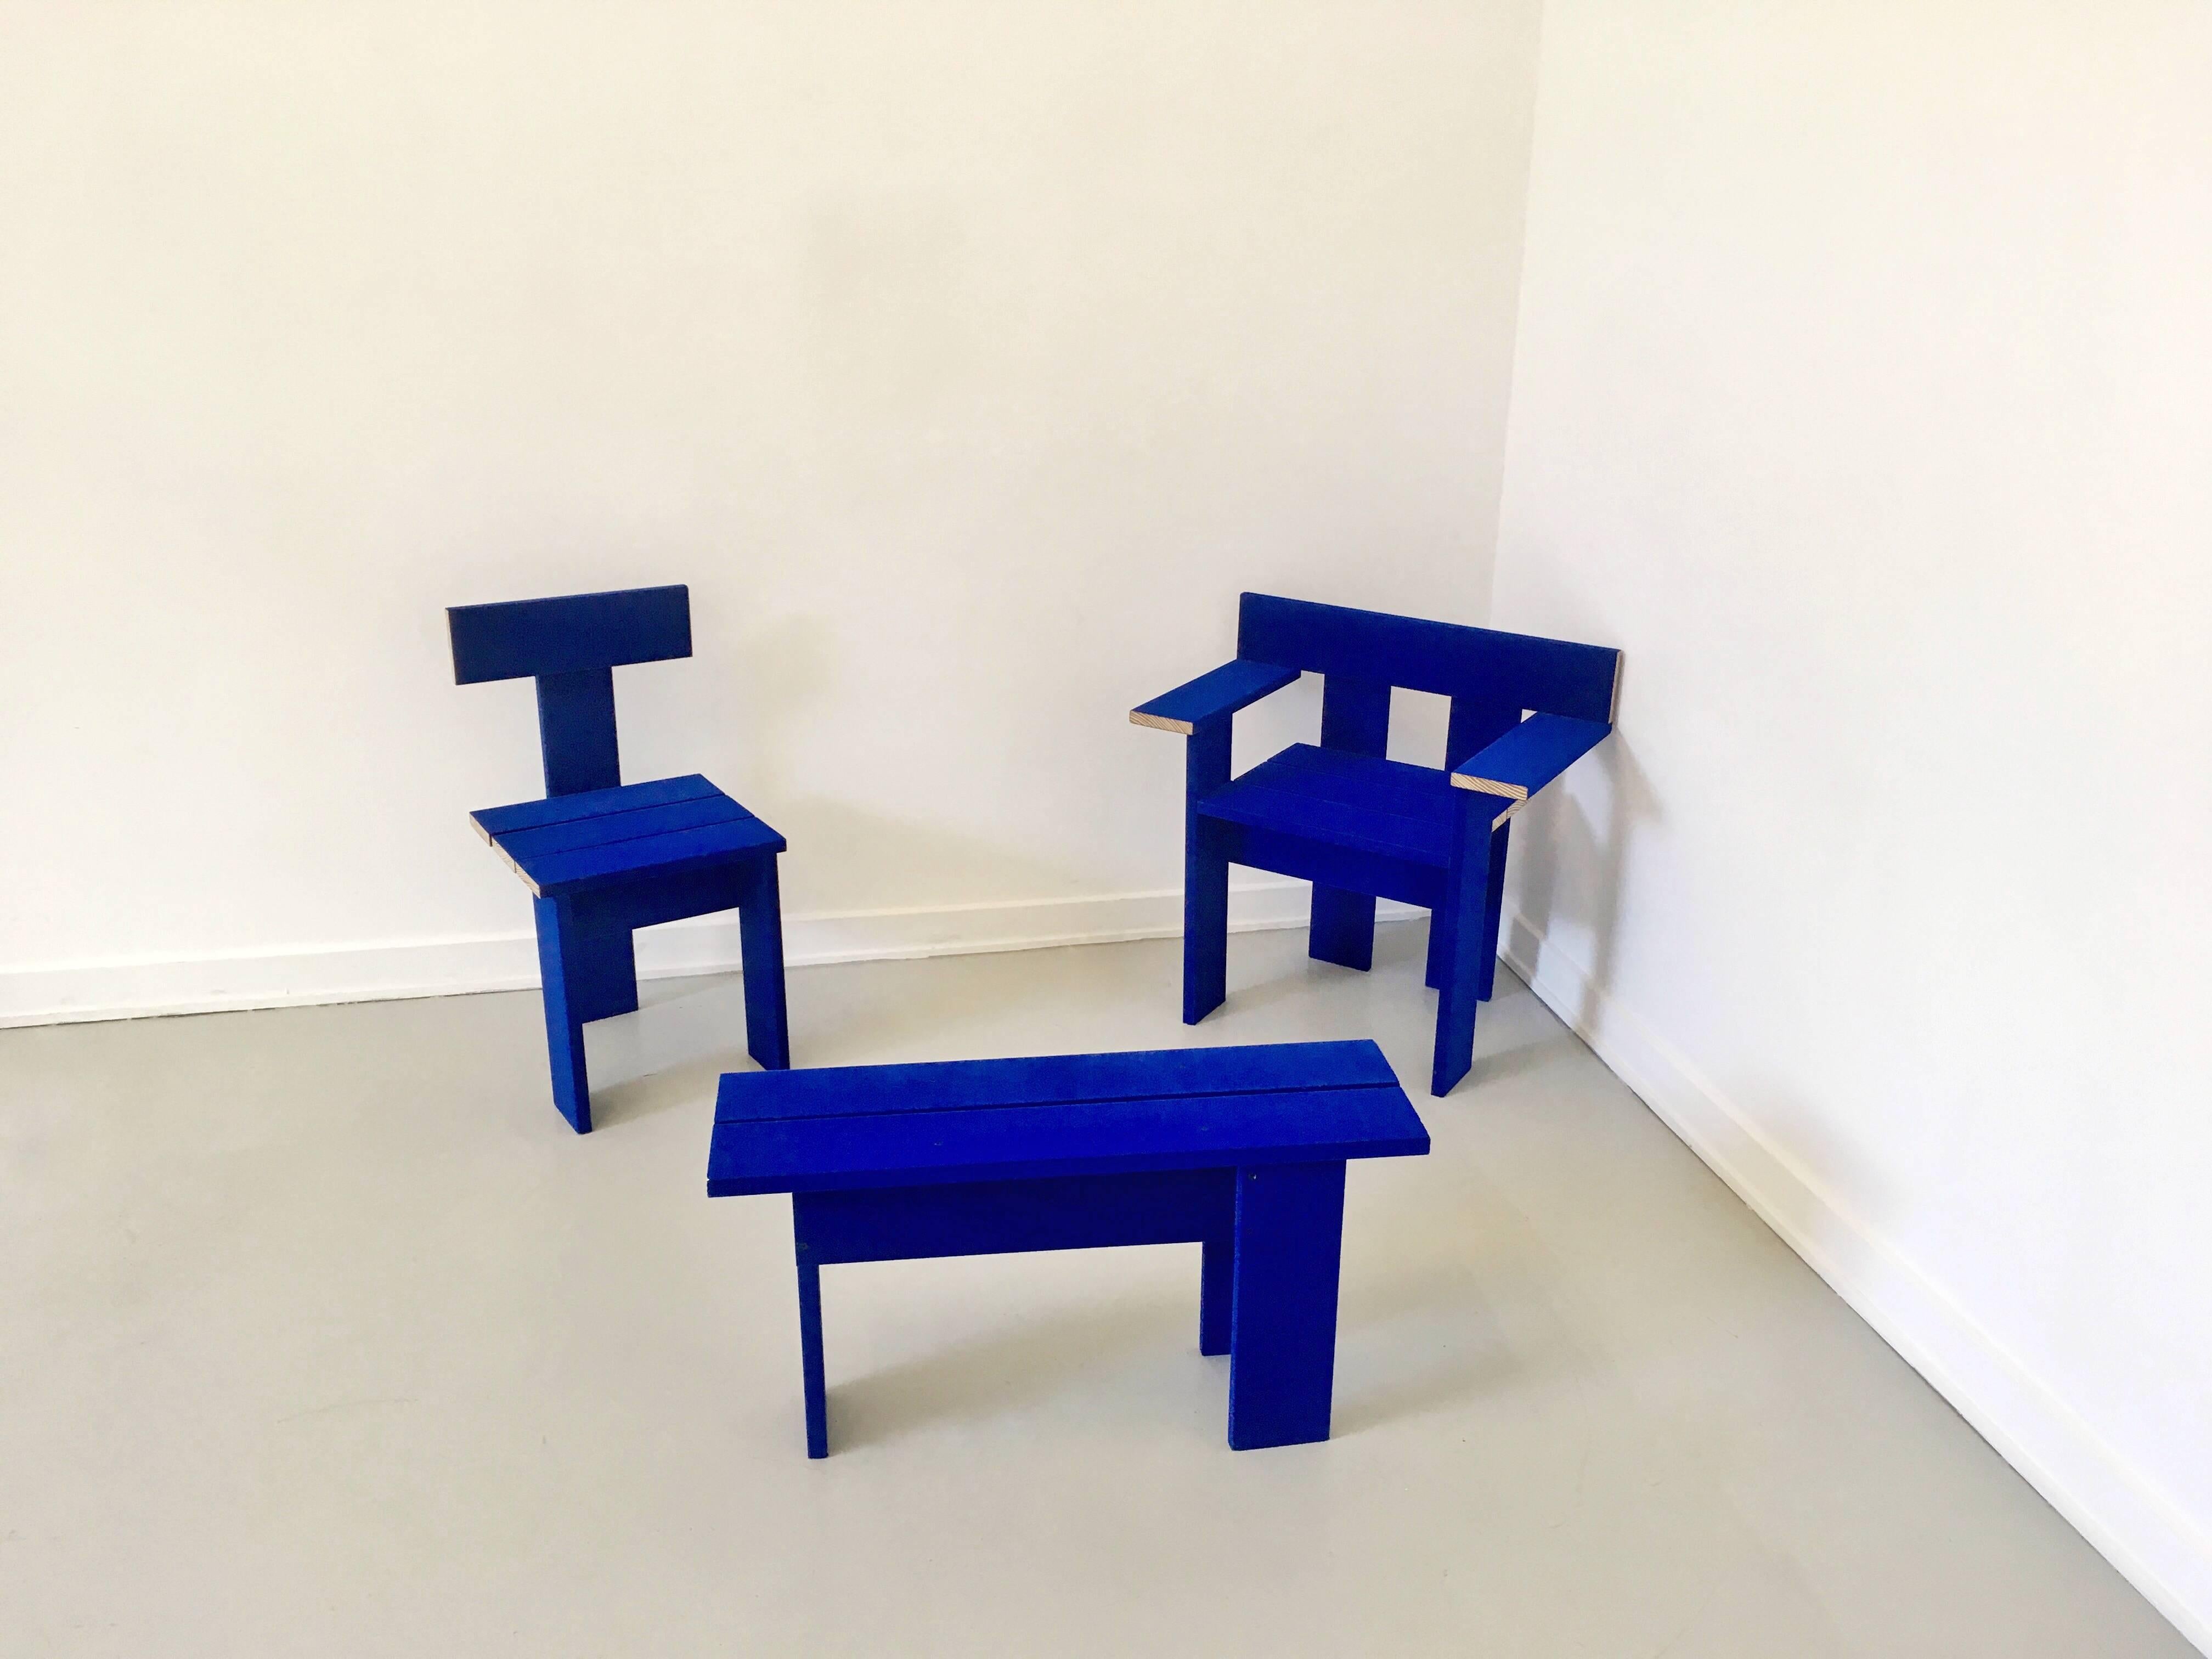 Blauer, mit Stoff bezogener Holzstuhl des Londoner Designduos Soft Baroque, der zuvor im Het Nieuwe Institut gezeigt wurde.

Die Renderings werden diabolischer und raffinierter, die Darstellungen der Realität erscheinen in höherer Auflösung. In der